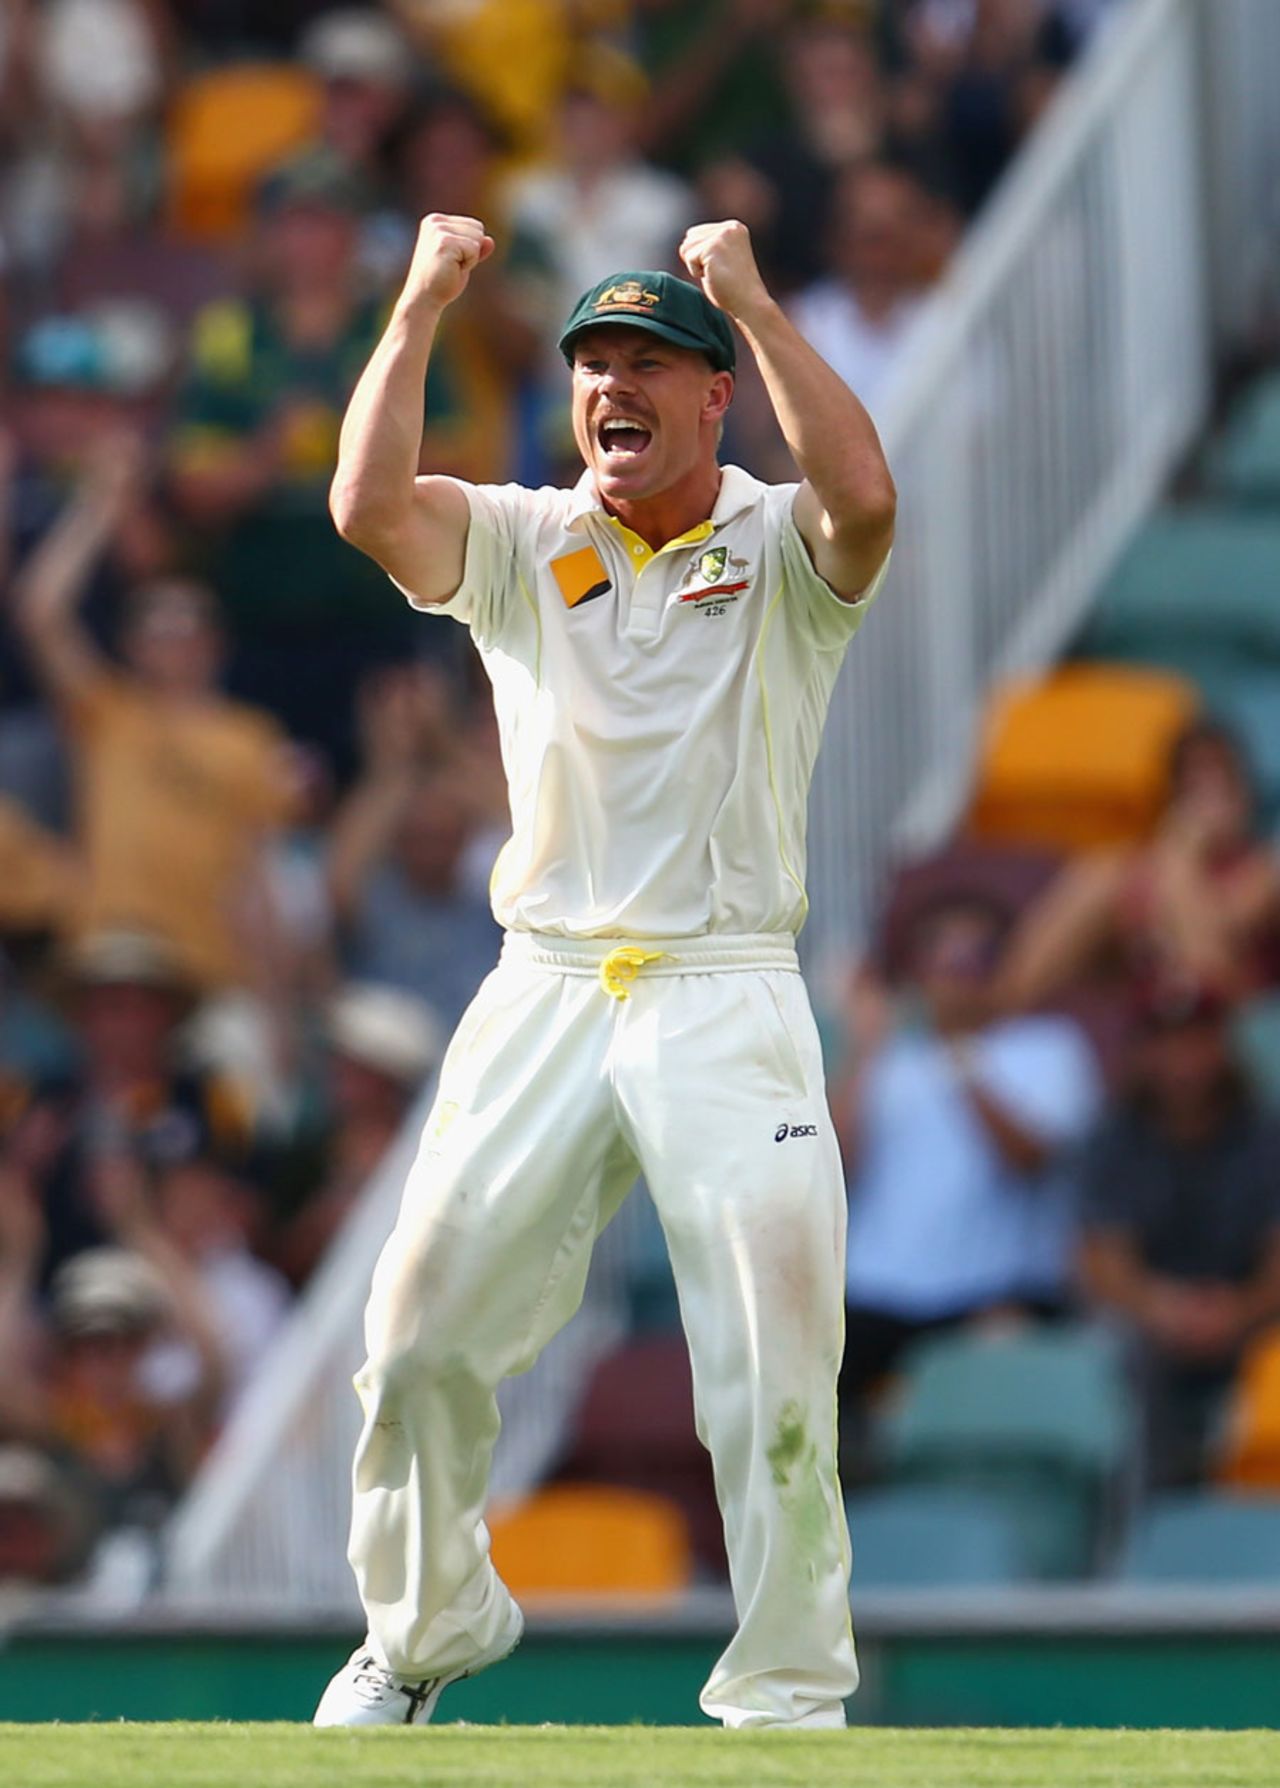 David Warner roars after his catch dismissed Matt Prior, Australia v England, 1st Test, Brisbane, 4th day, November 24, 2013